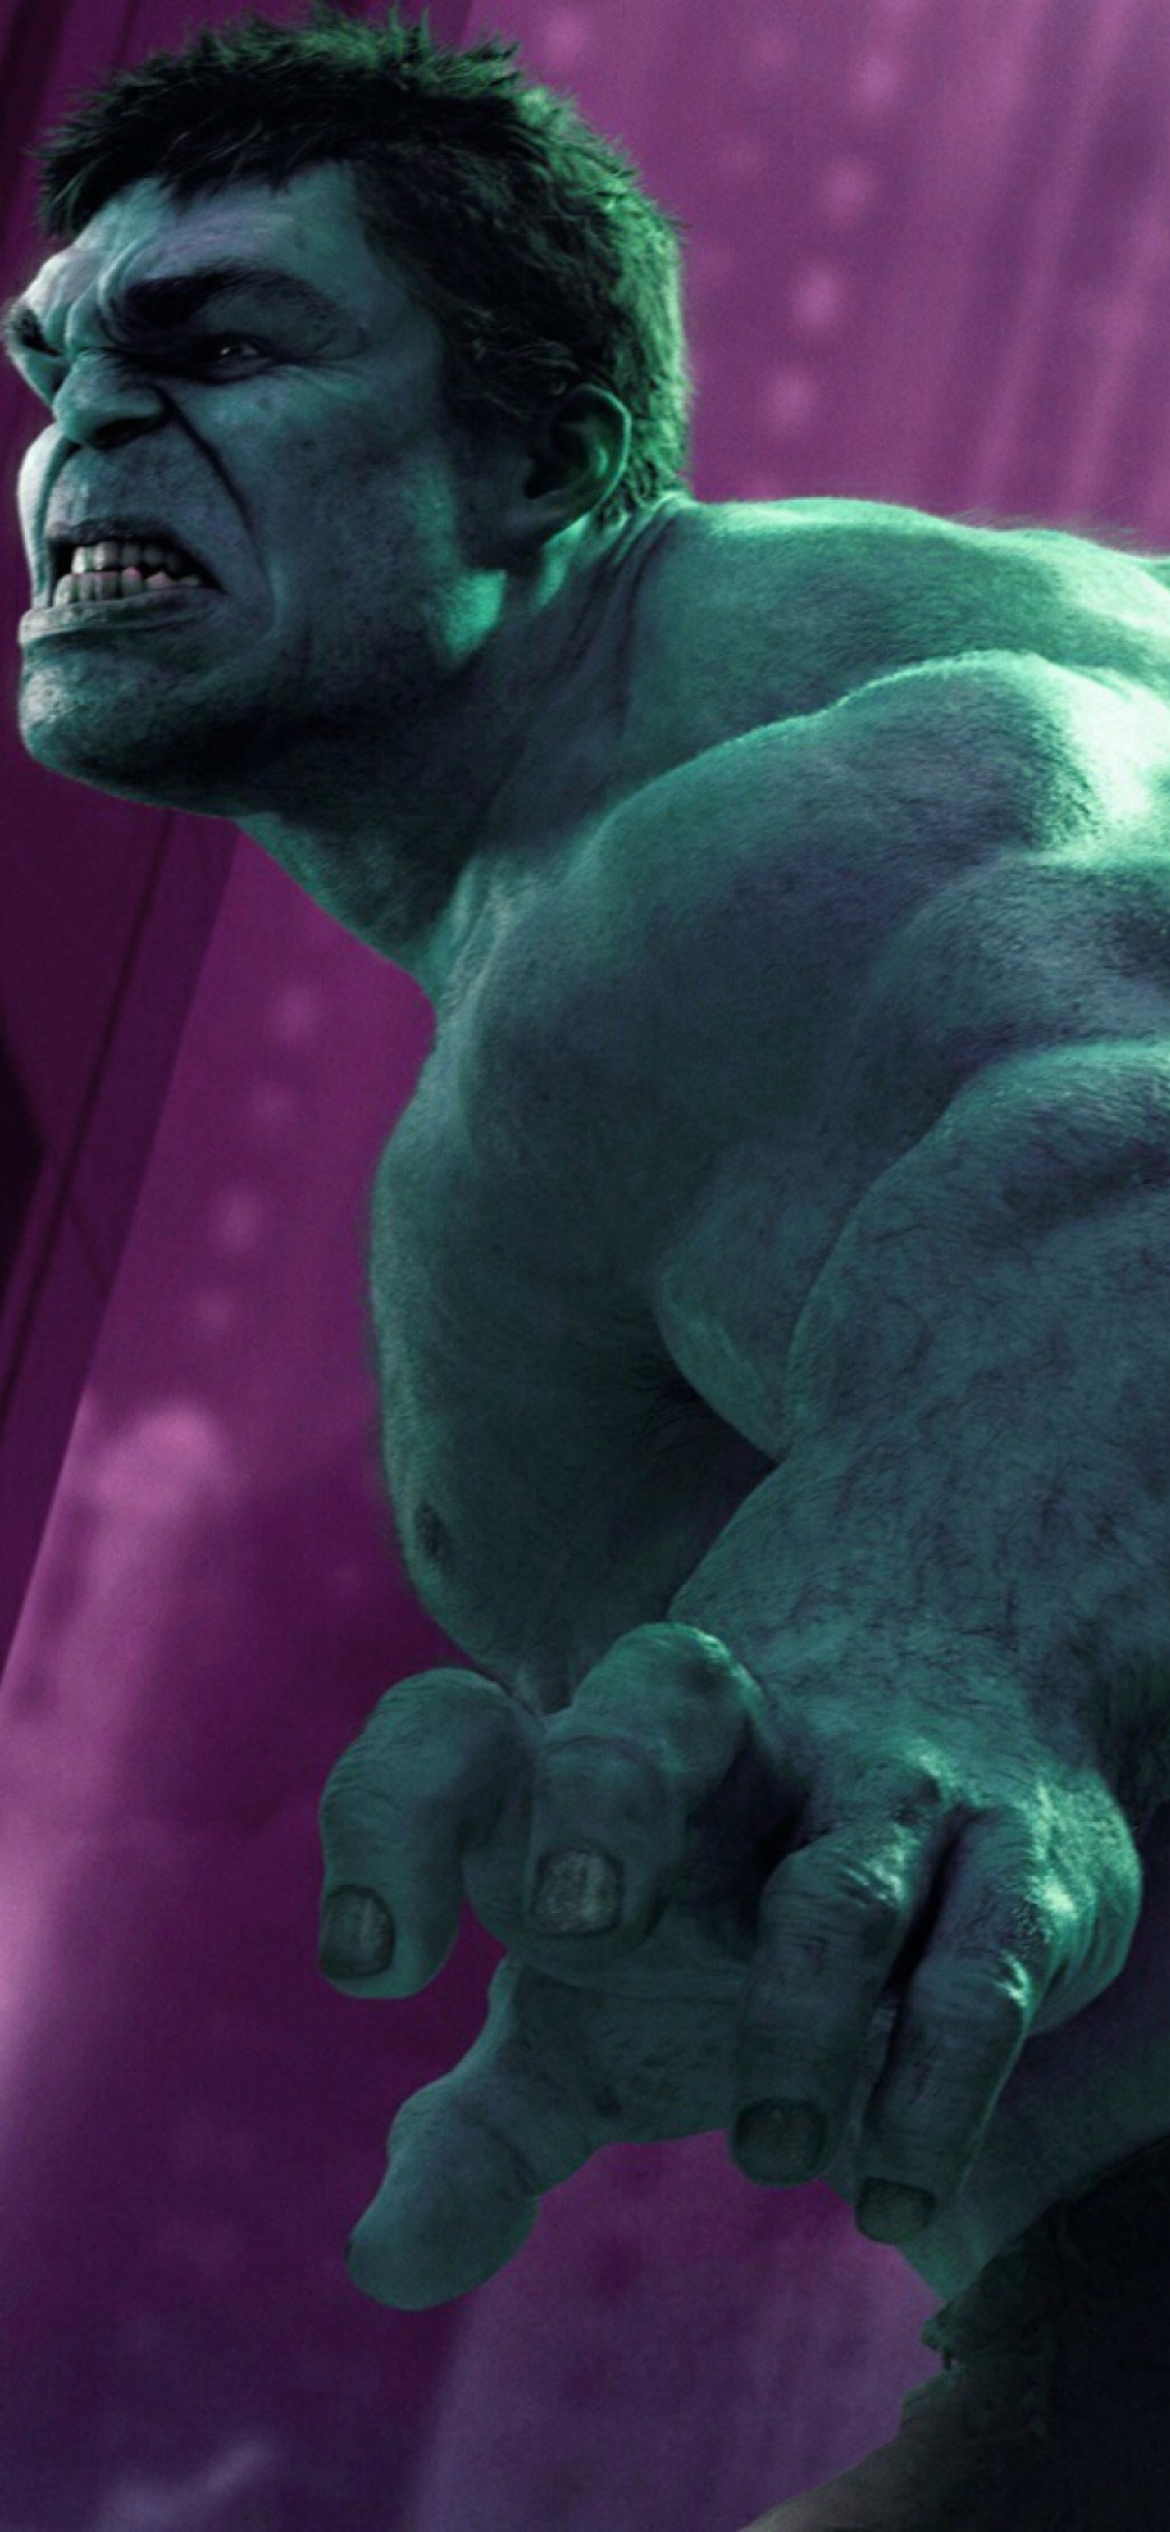 Sfondi Hulk - The Avengers 2012 1170x2532